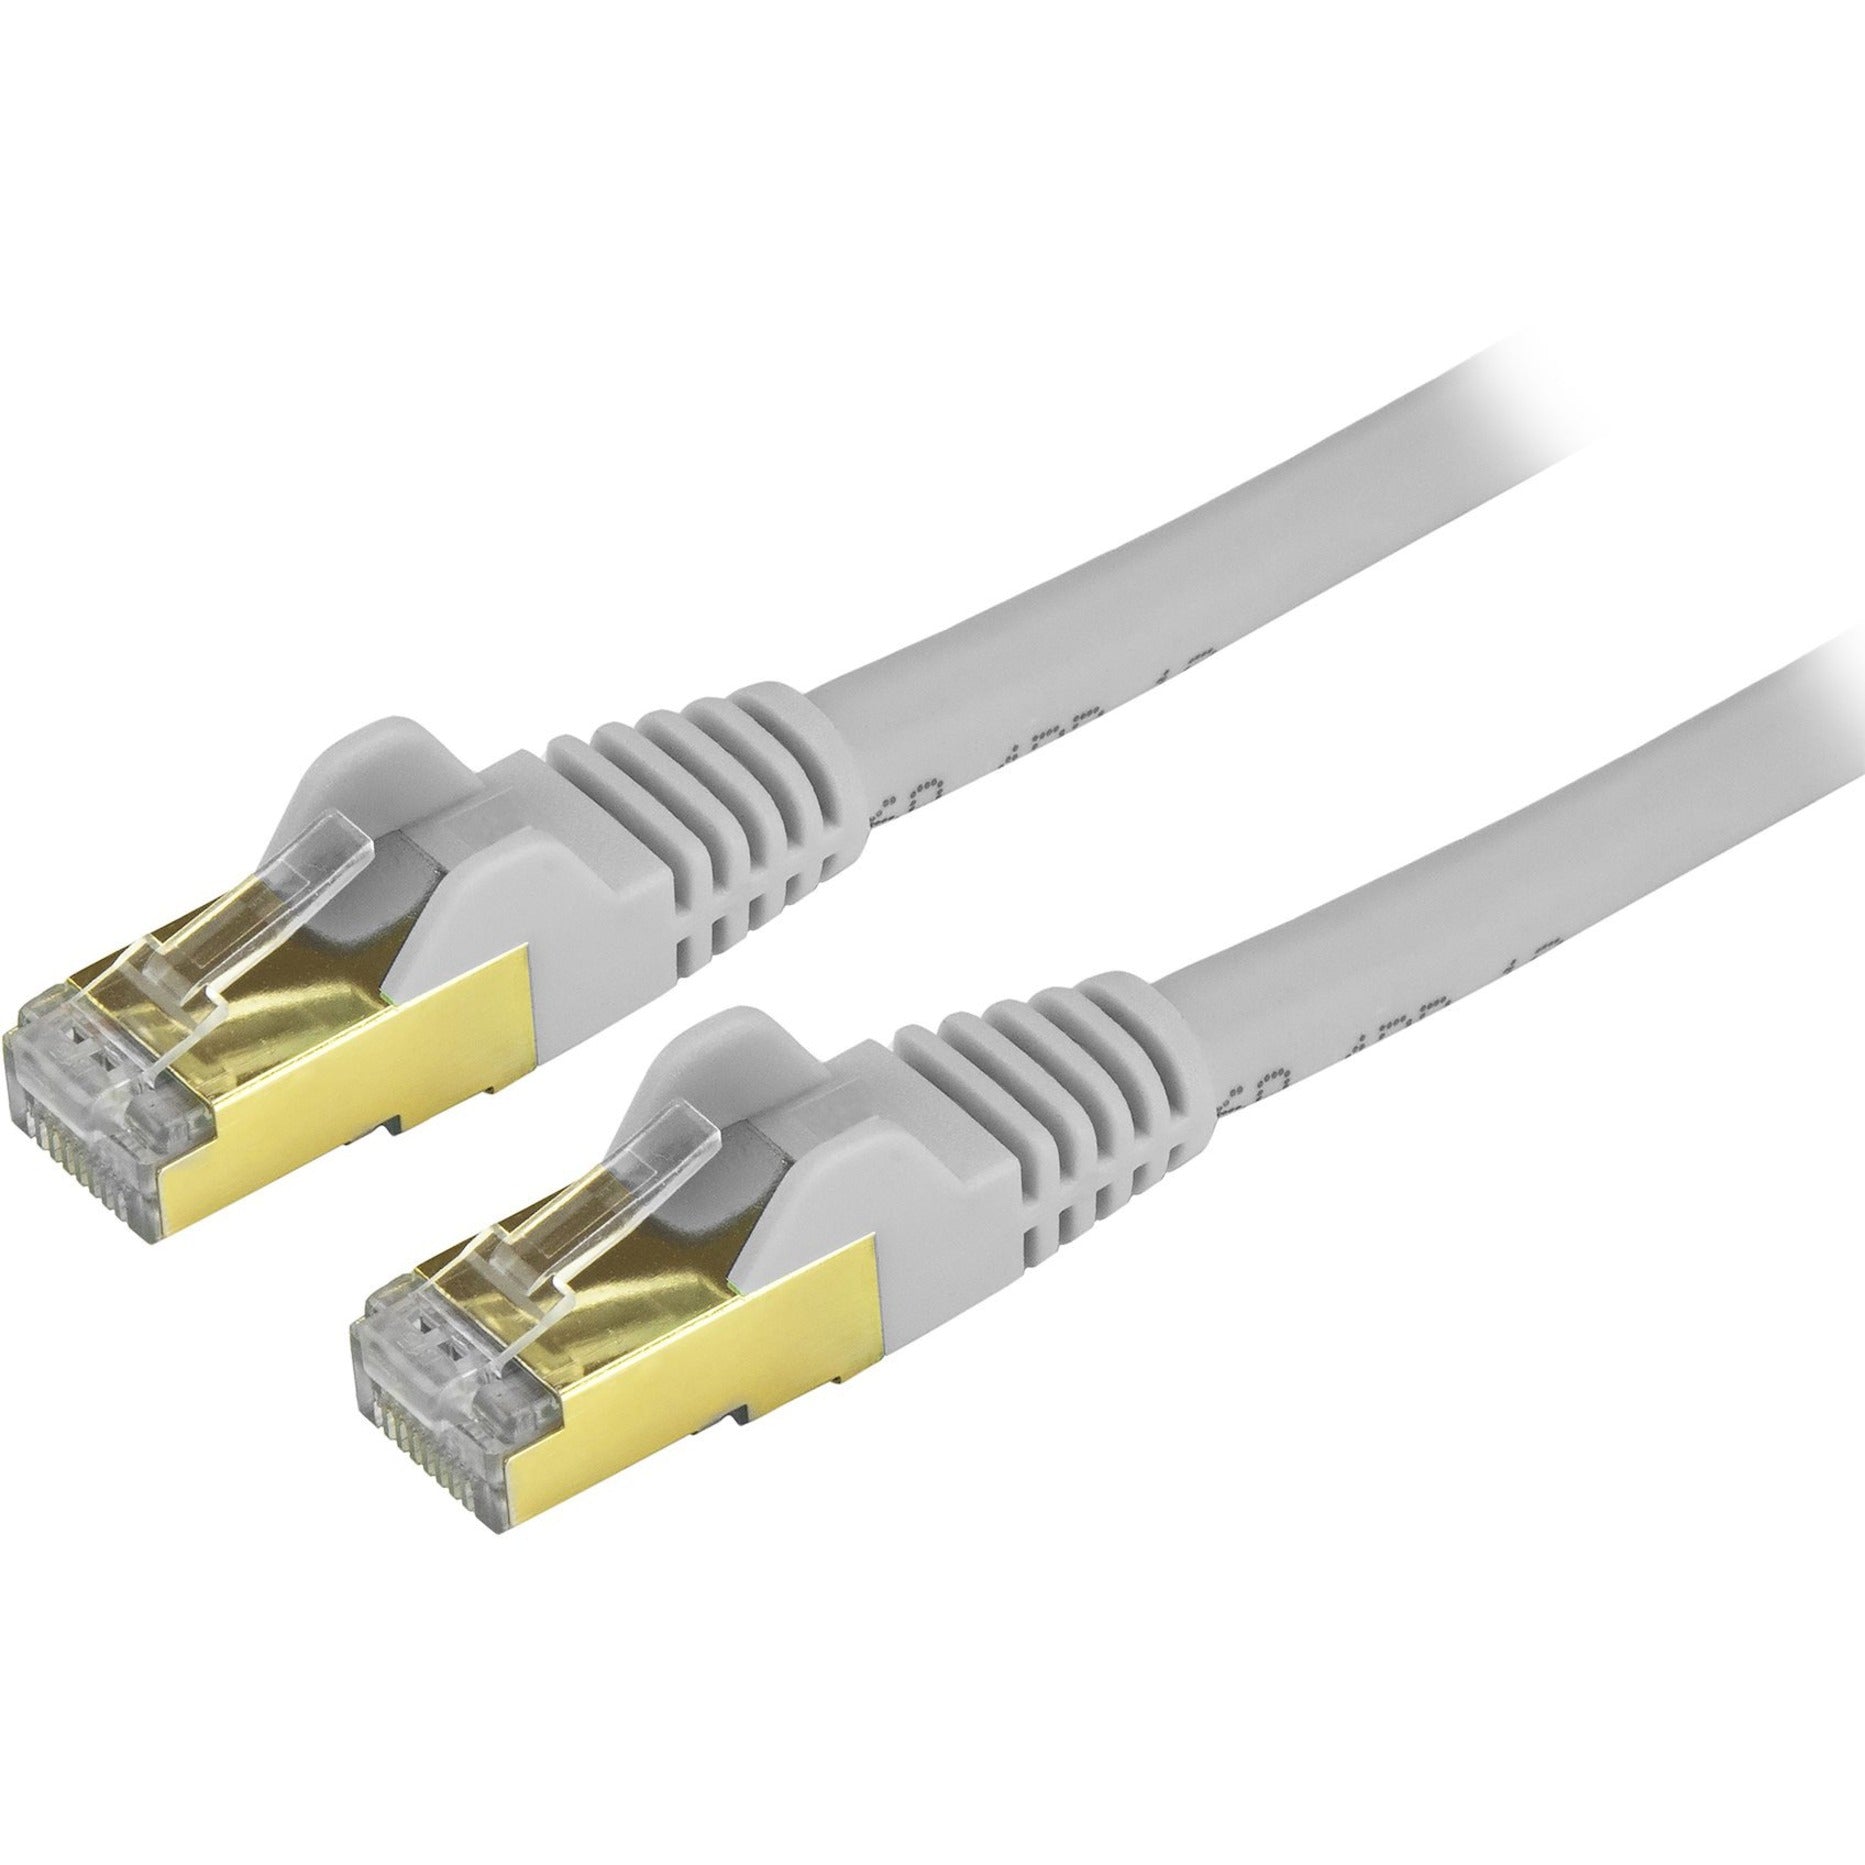 StarTech.com C6ASPAT8GR -  Cable de conexión Ethernet Cat6a - Apantallado (STP) - 8 ft. Gris Cable Ethernet RJ45 sin Enganches